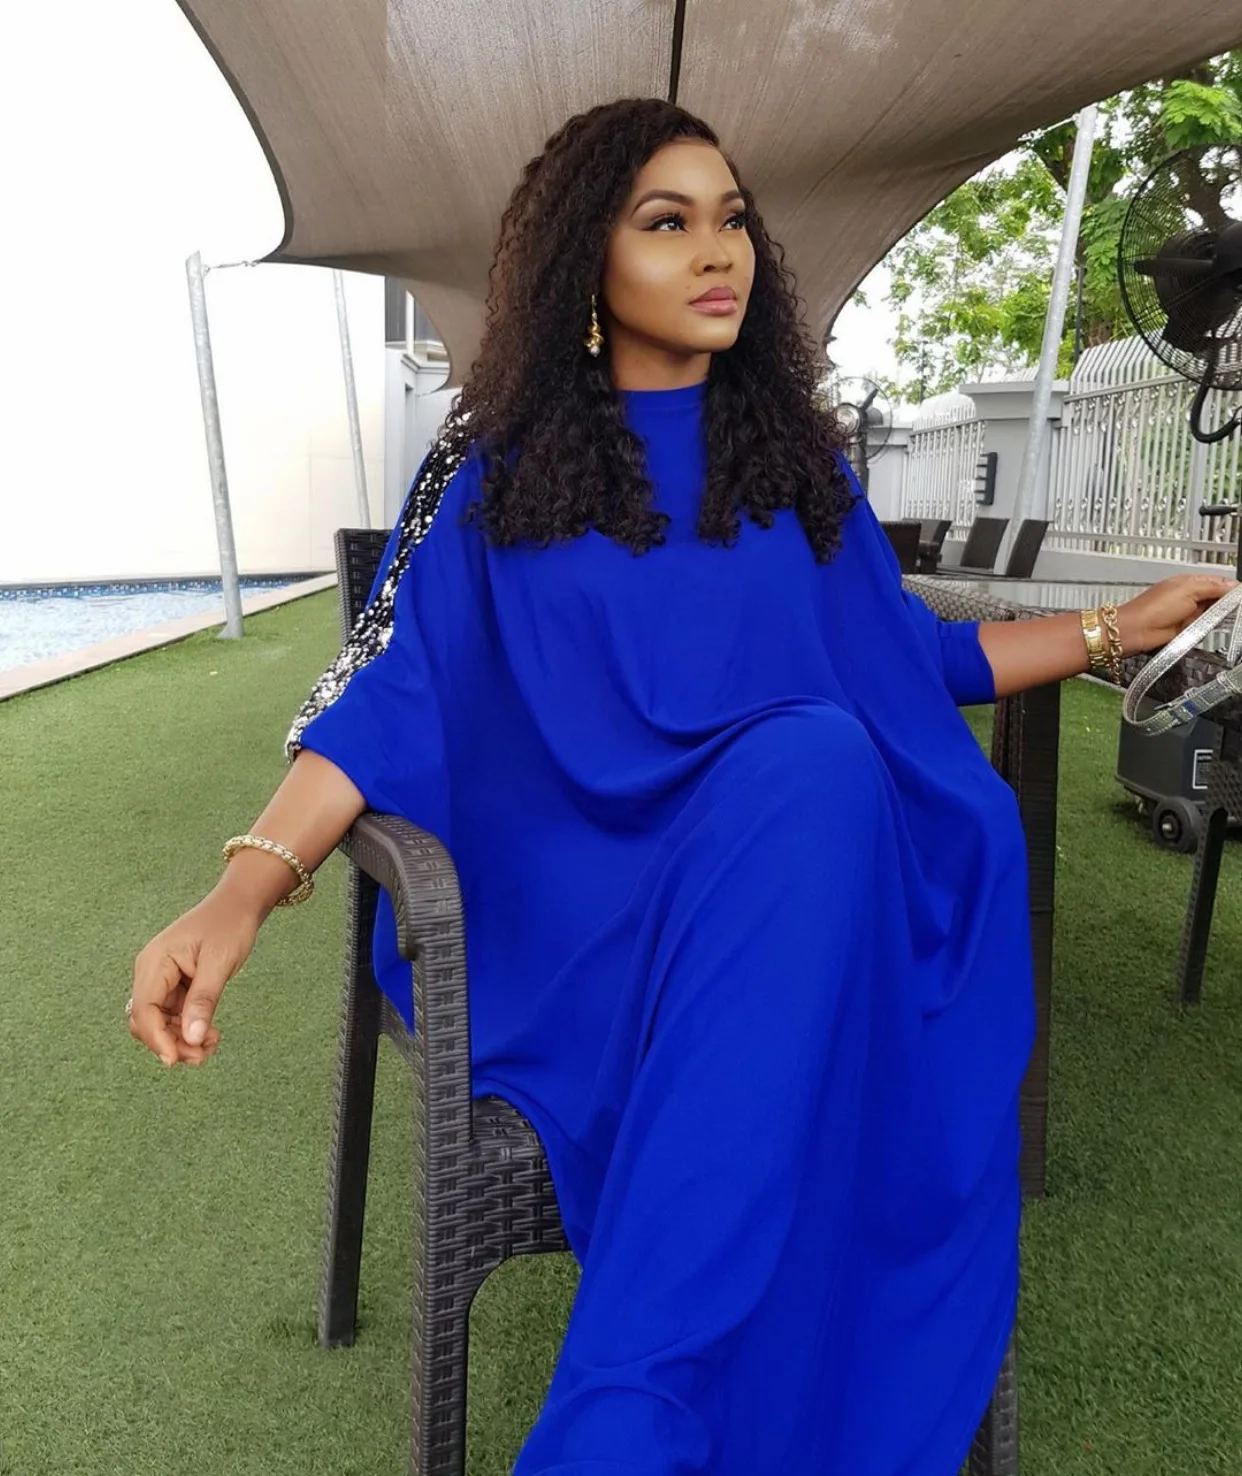 2019 супер размер новый стиль африканская женская одежда Дашики модный принт ткань платье размер L XL XXL 3XL